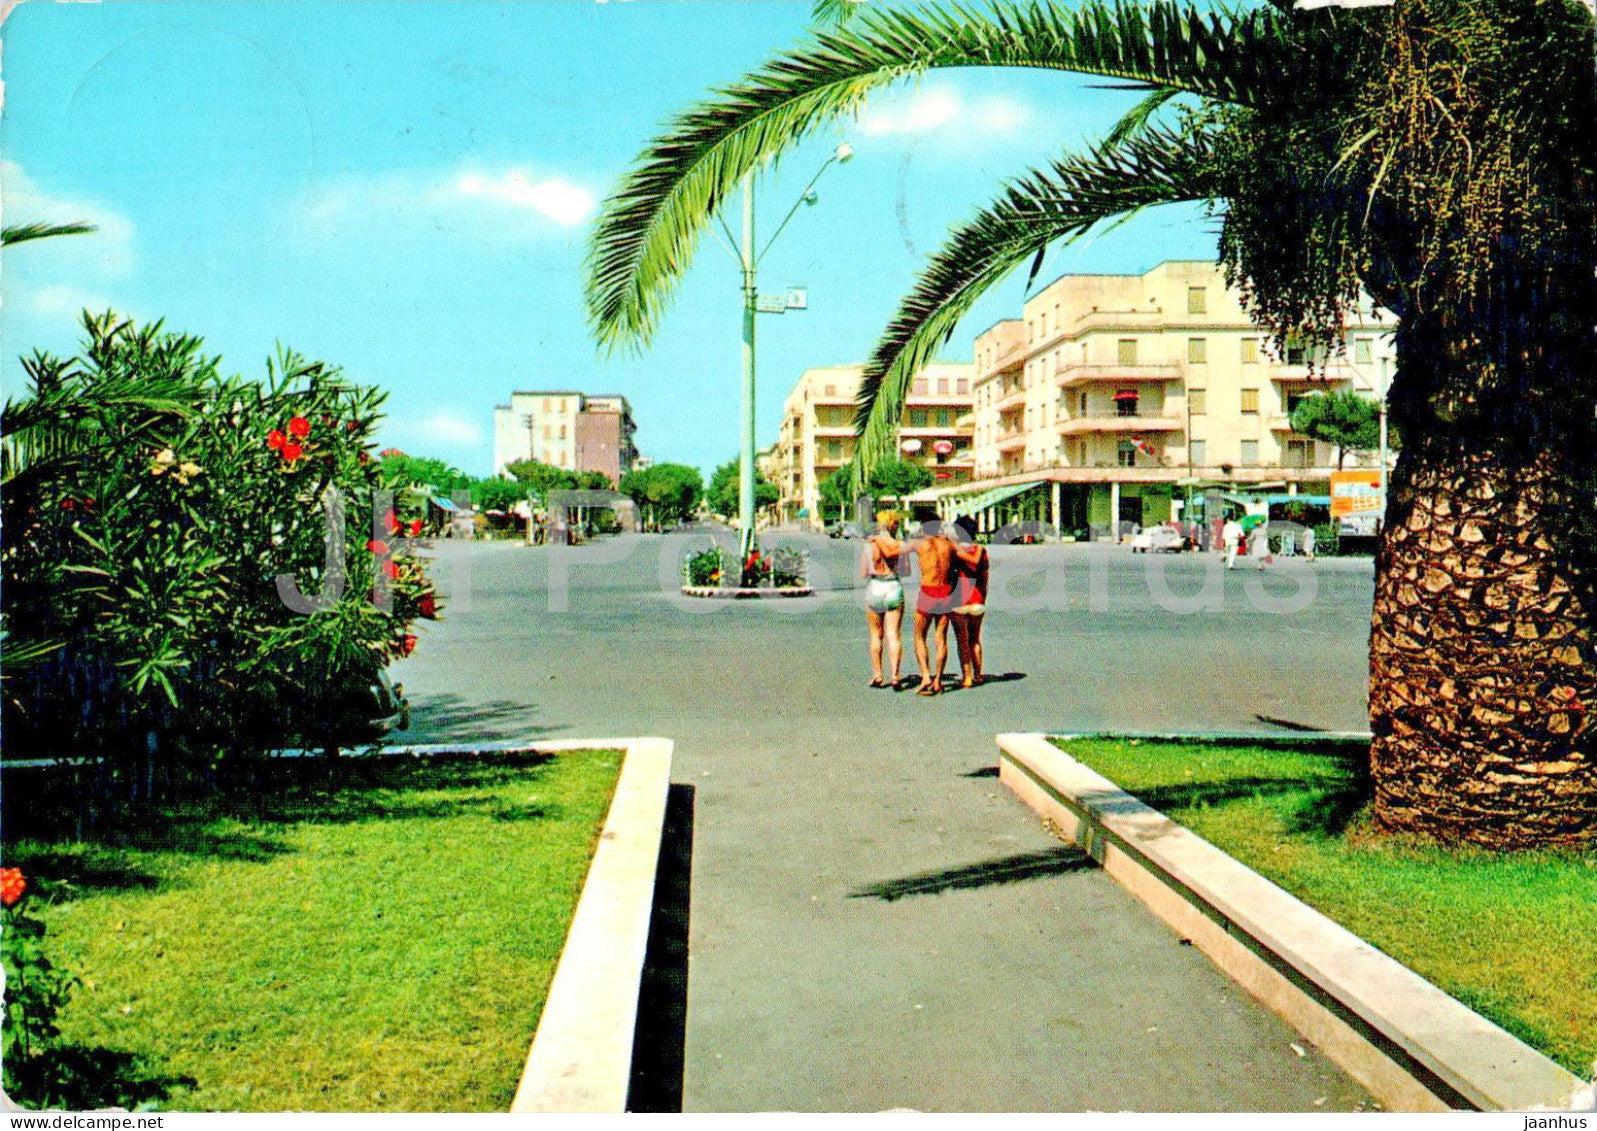 Ladispoli - Piazza della Vittoria - Giardini pubblici - Victory Square - Public Gardens - 41 - 1962 - Italy - used - JH Postcards